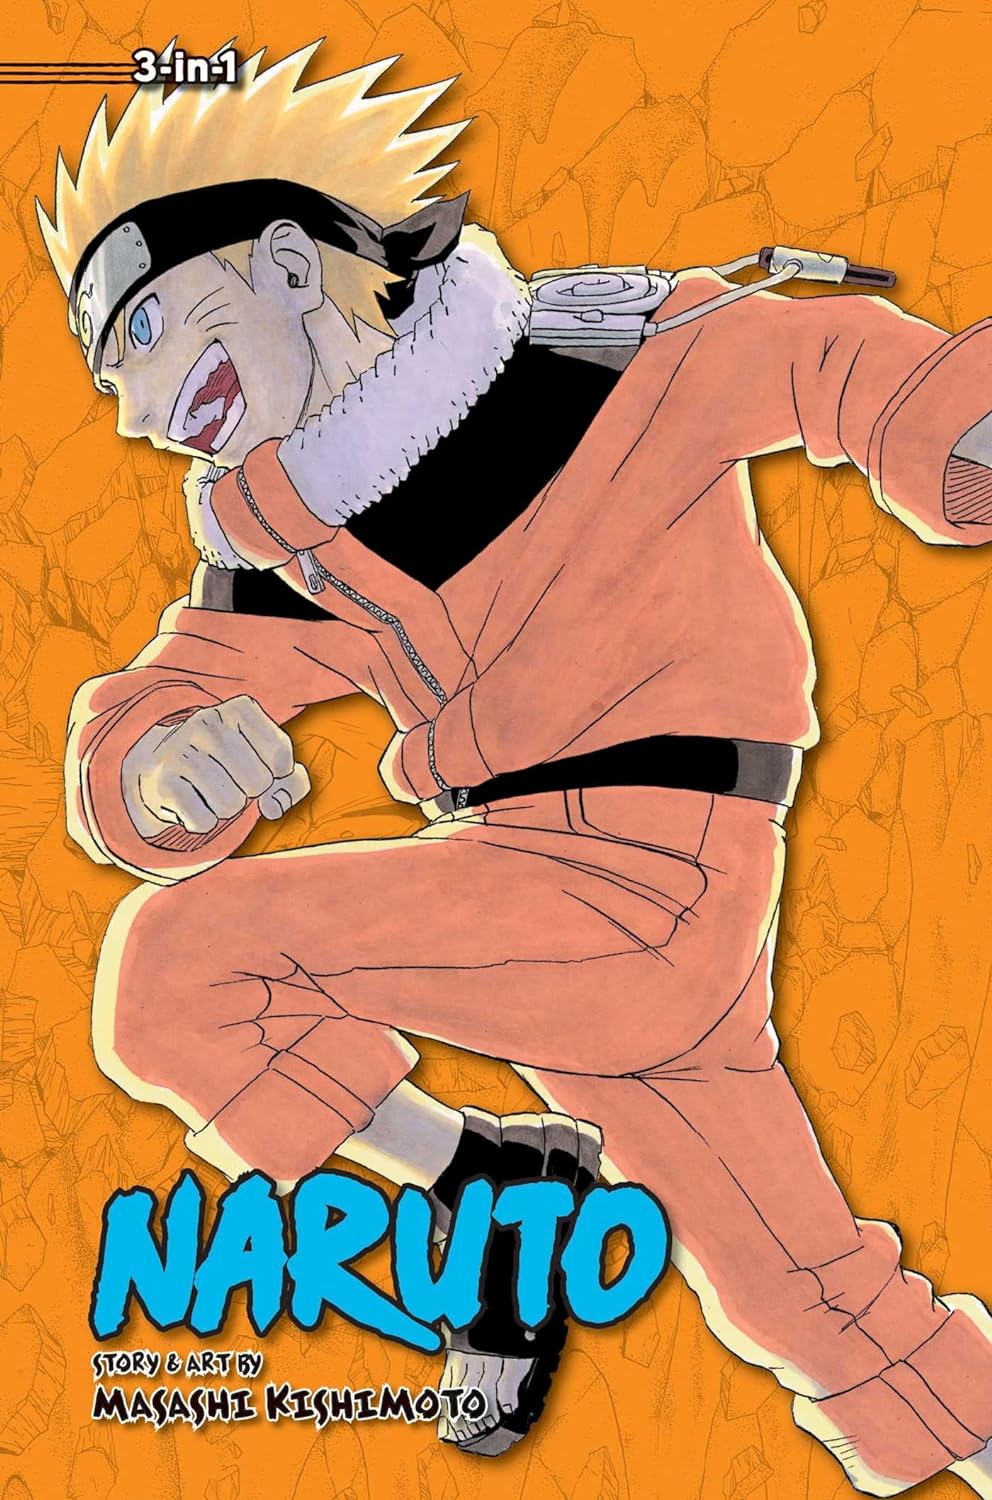 Naruto (3-in-1 Edition) Vol. 6 (Vol. 16, 17 & 18)